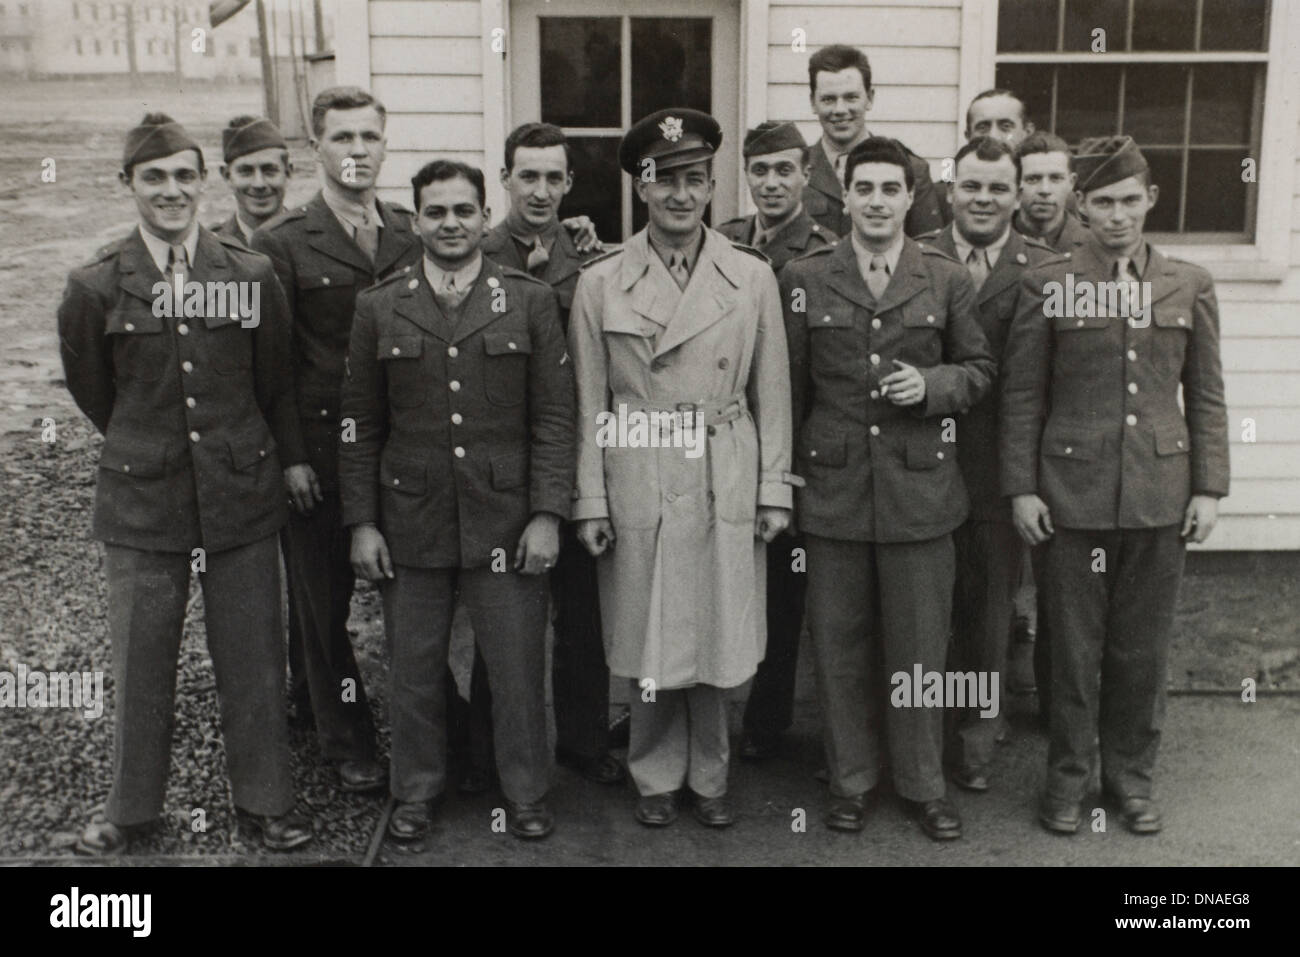 Gruppo di soldati in uniforme, ritratto, durante la seconda guerra mondiale, HQ 2° Battaglione, 389a di fanteria, US Army Base Militare, Indiana, USA, 1942 Foto Stock